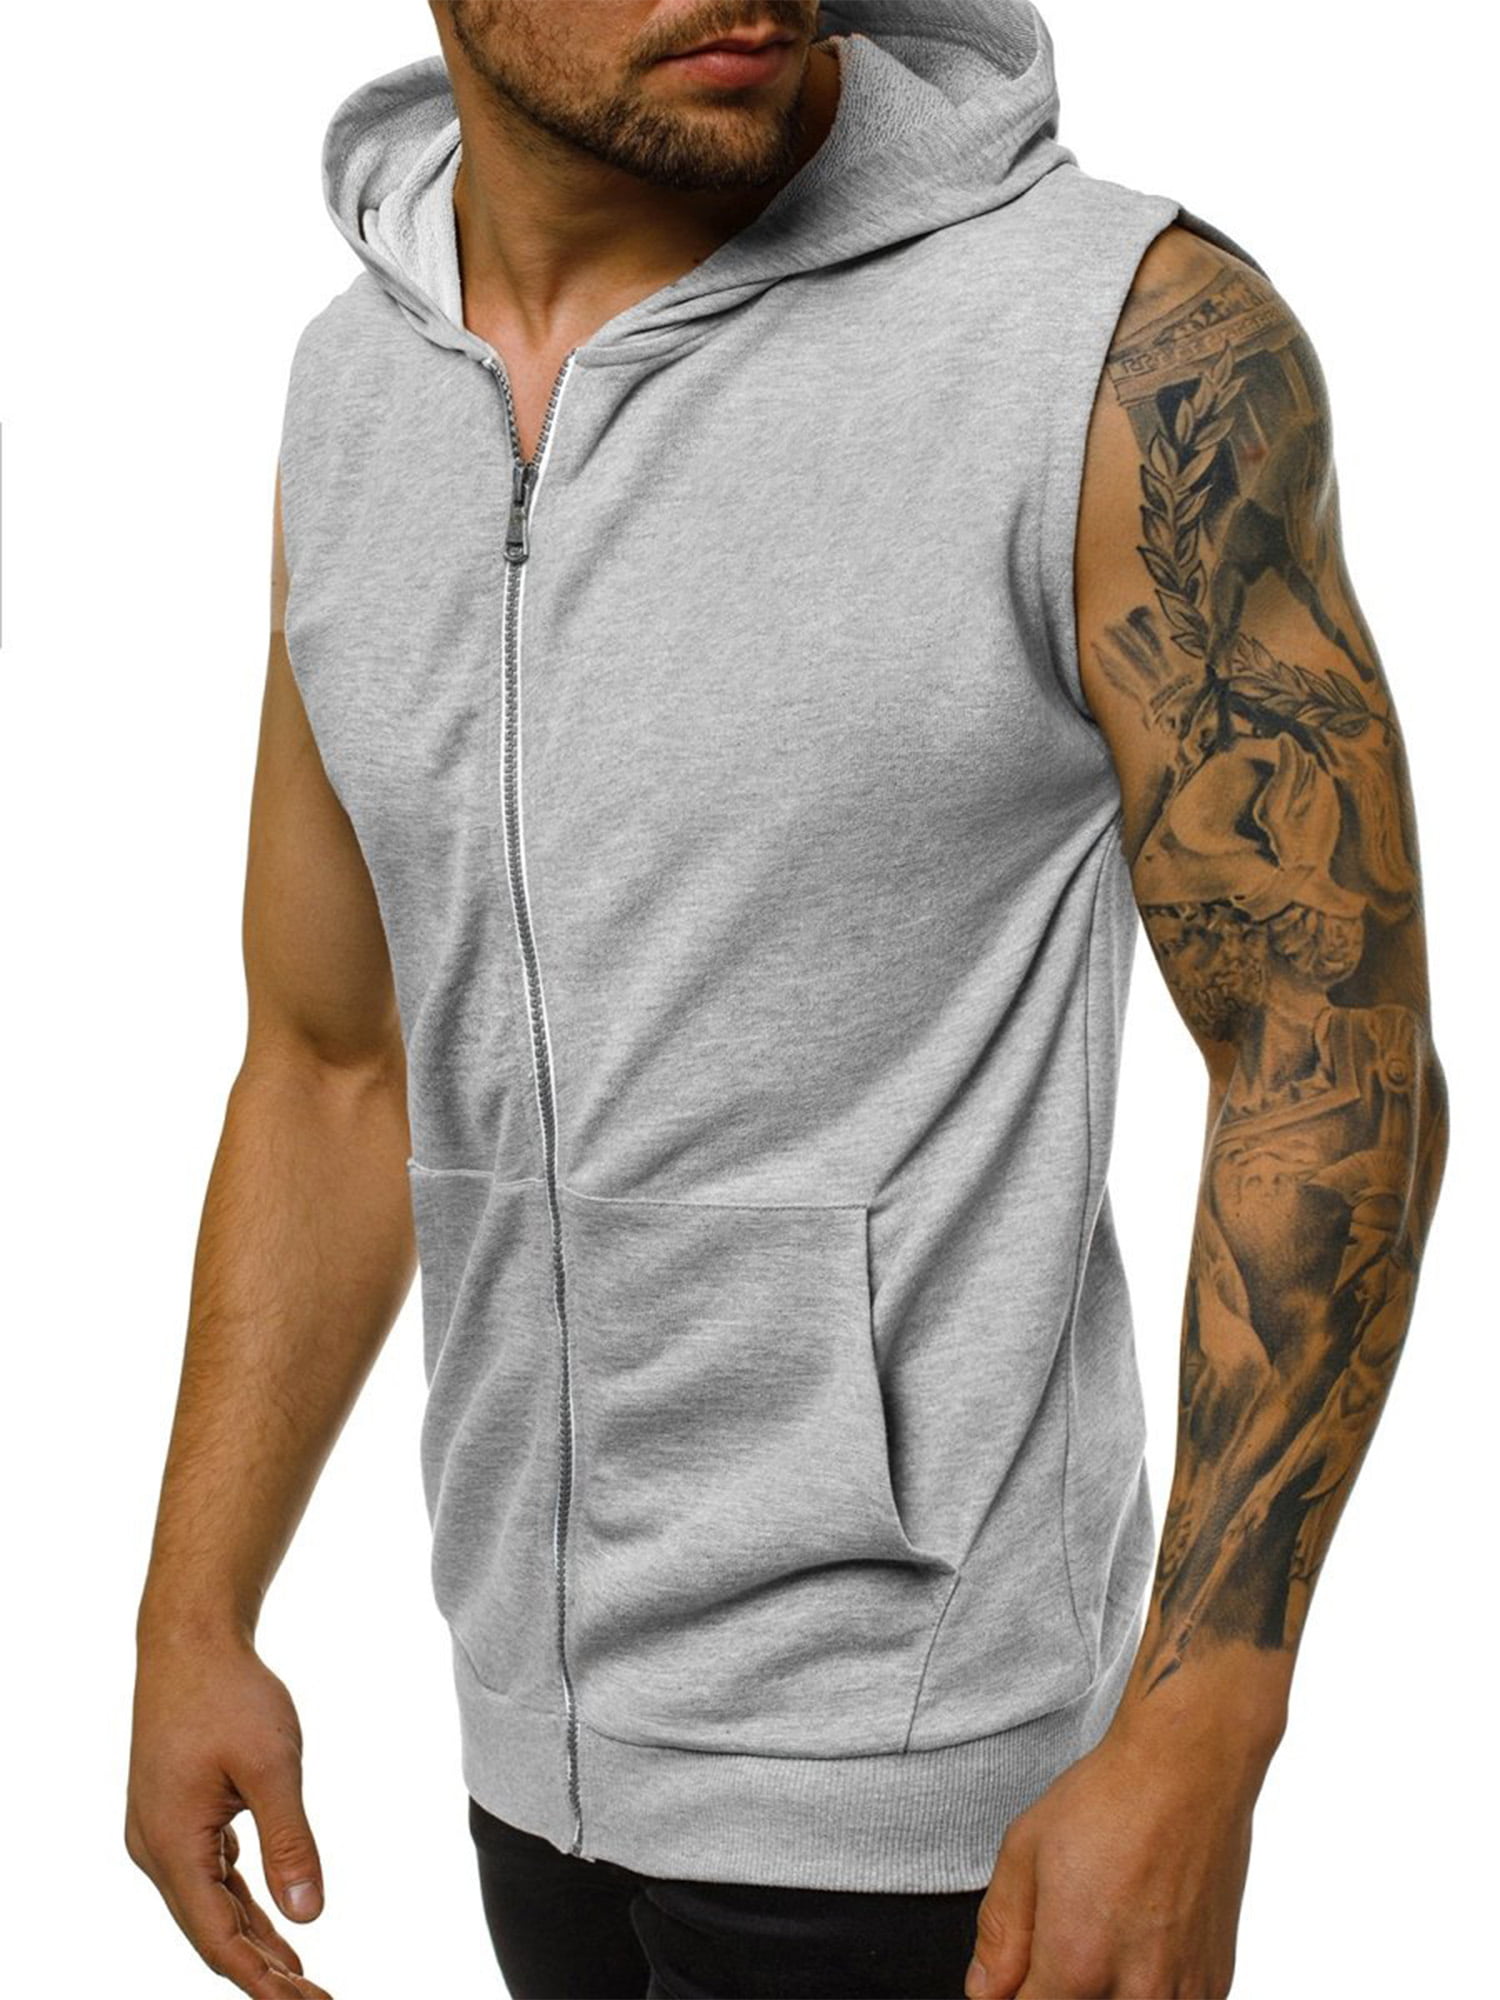 BYWX Men Slim Fit Active Zip Pocket Sleeveless Hoodie Zip-up Vest Workout Tank Top 